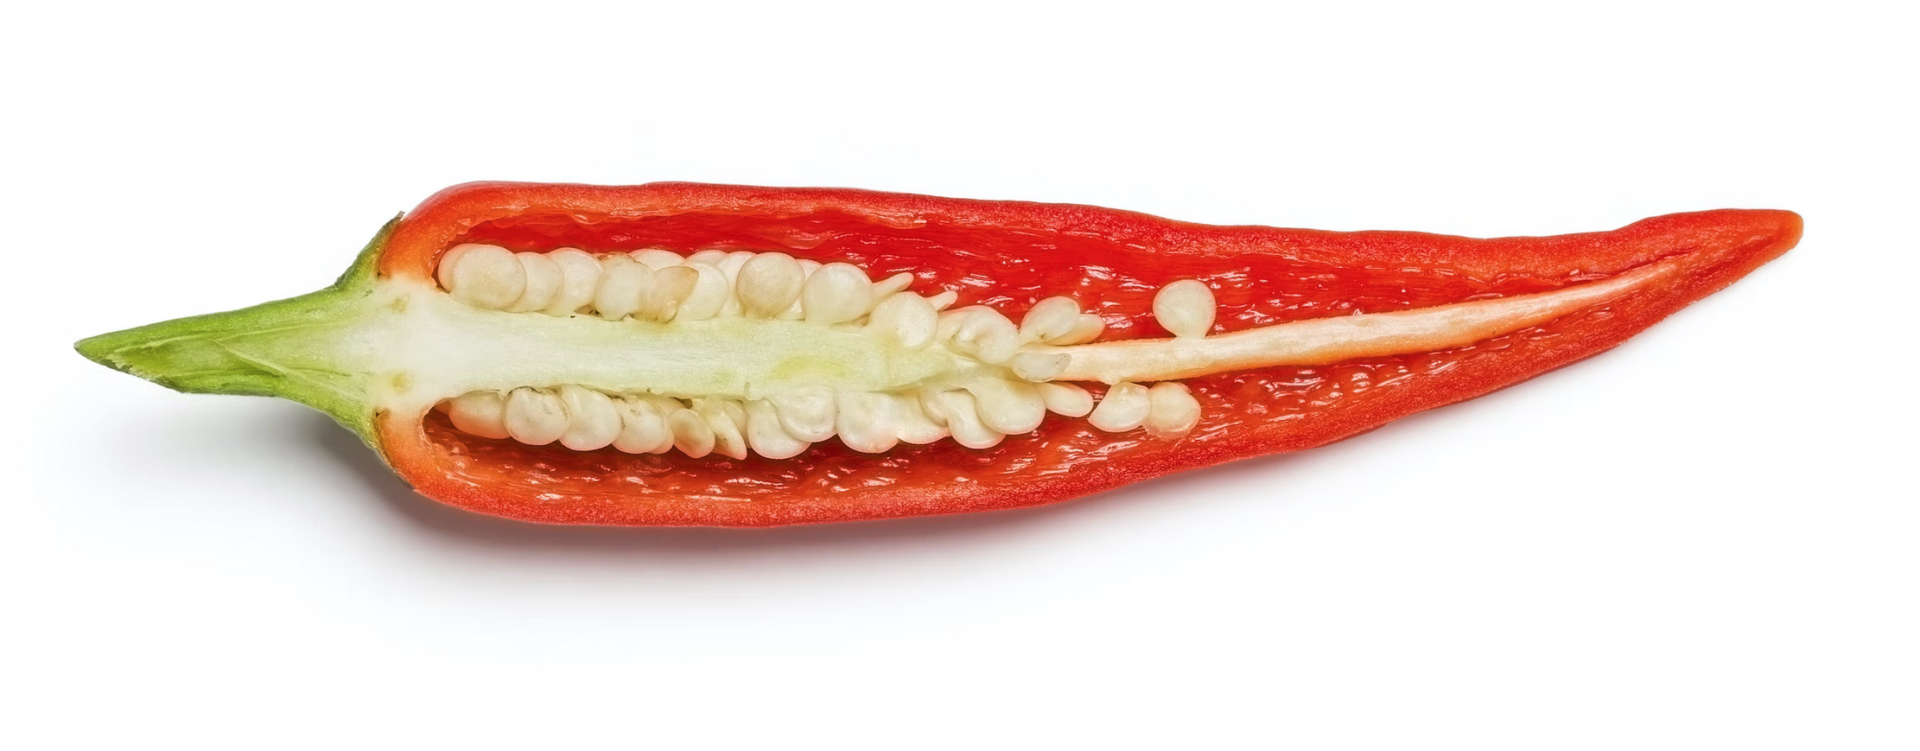 Chili Pepper Fun Facts